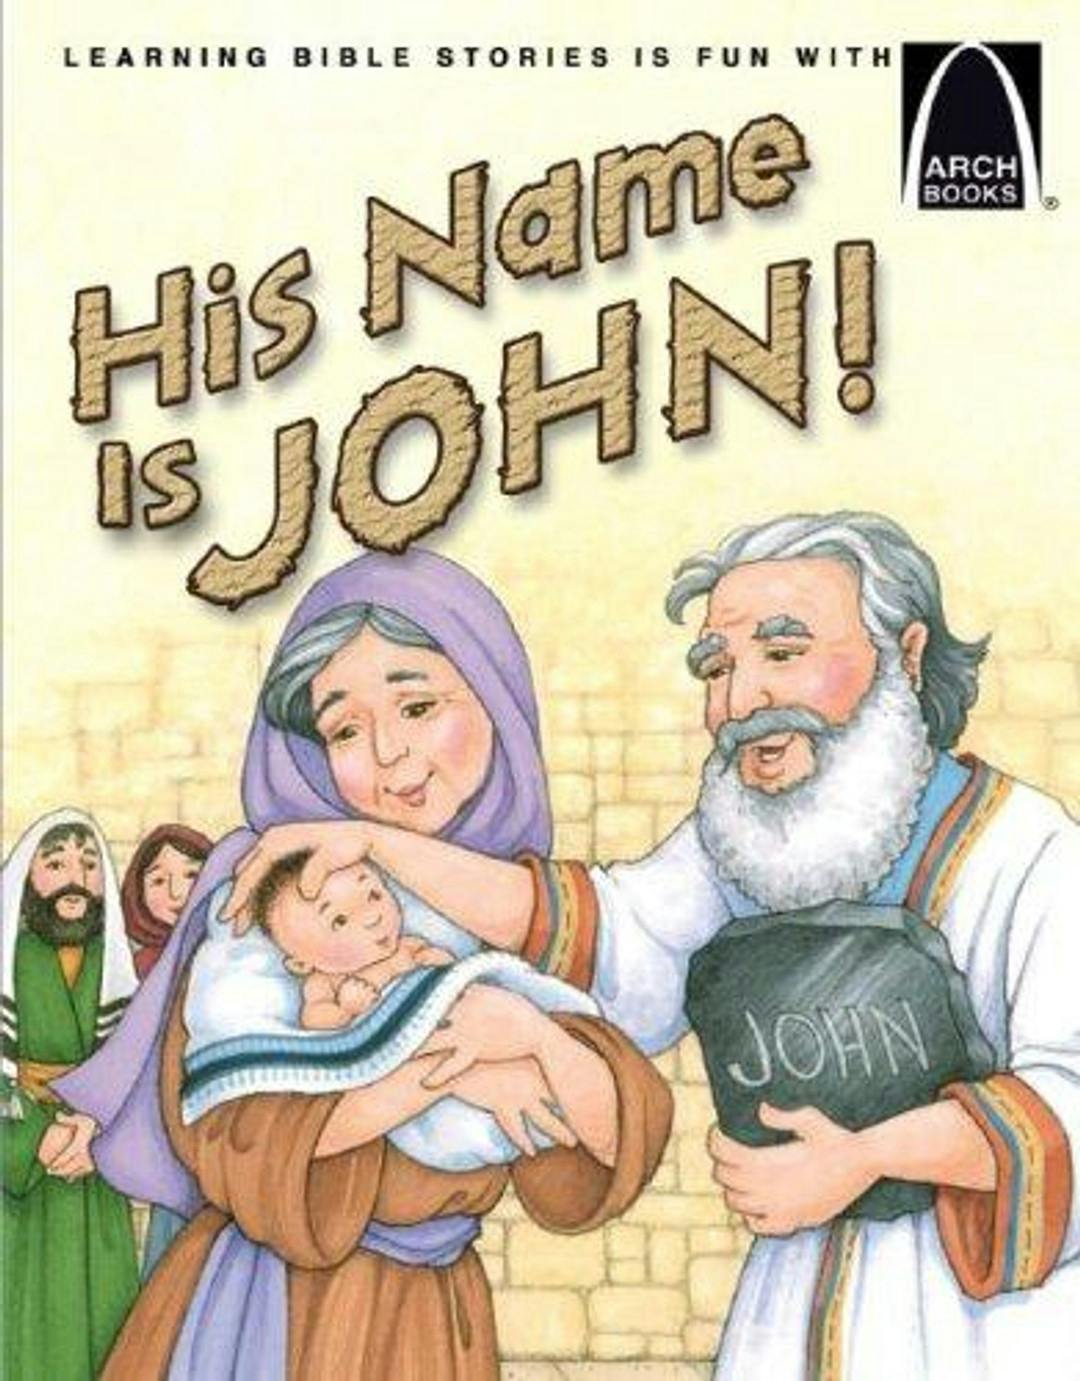 His Name Is John!